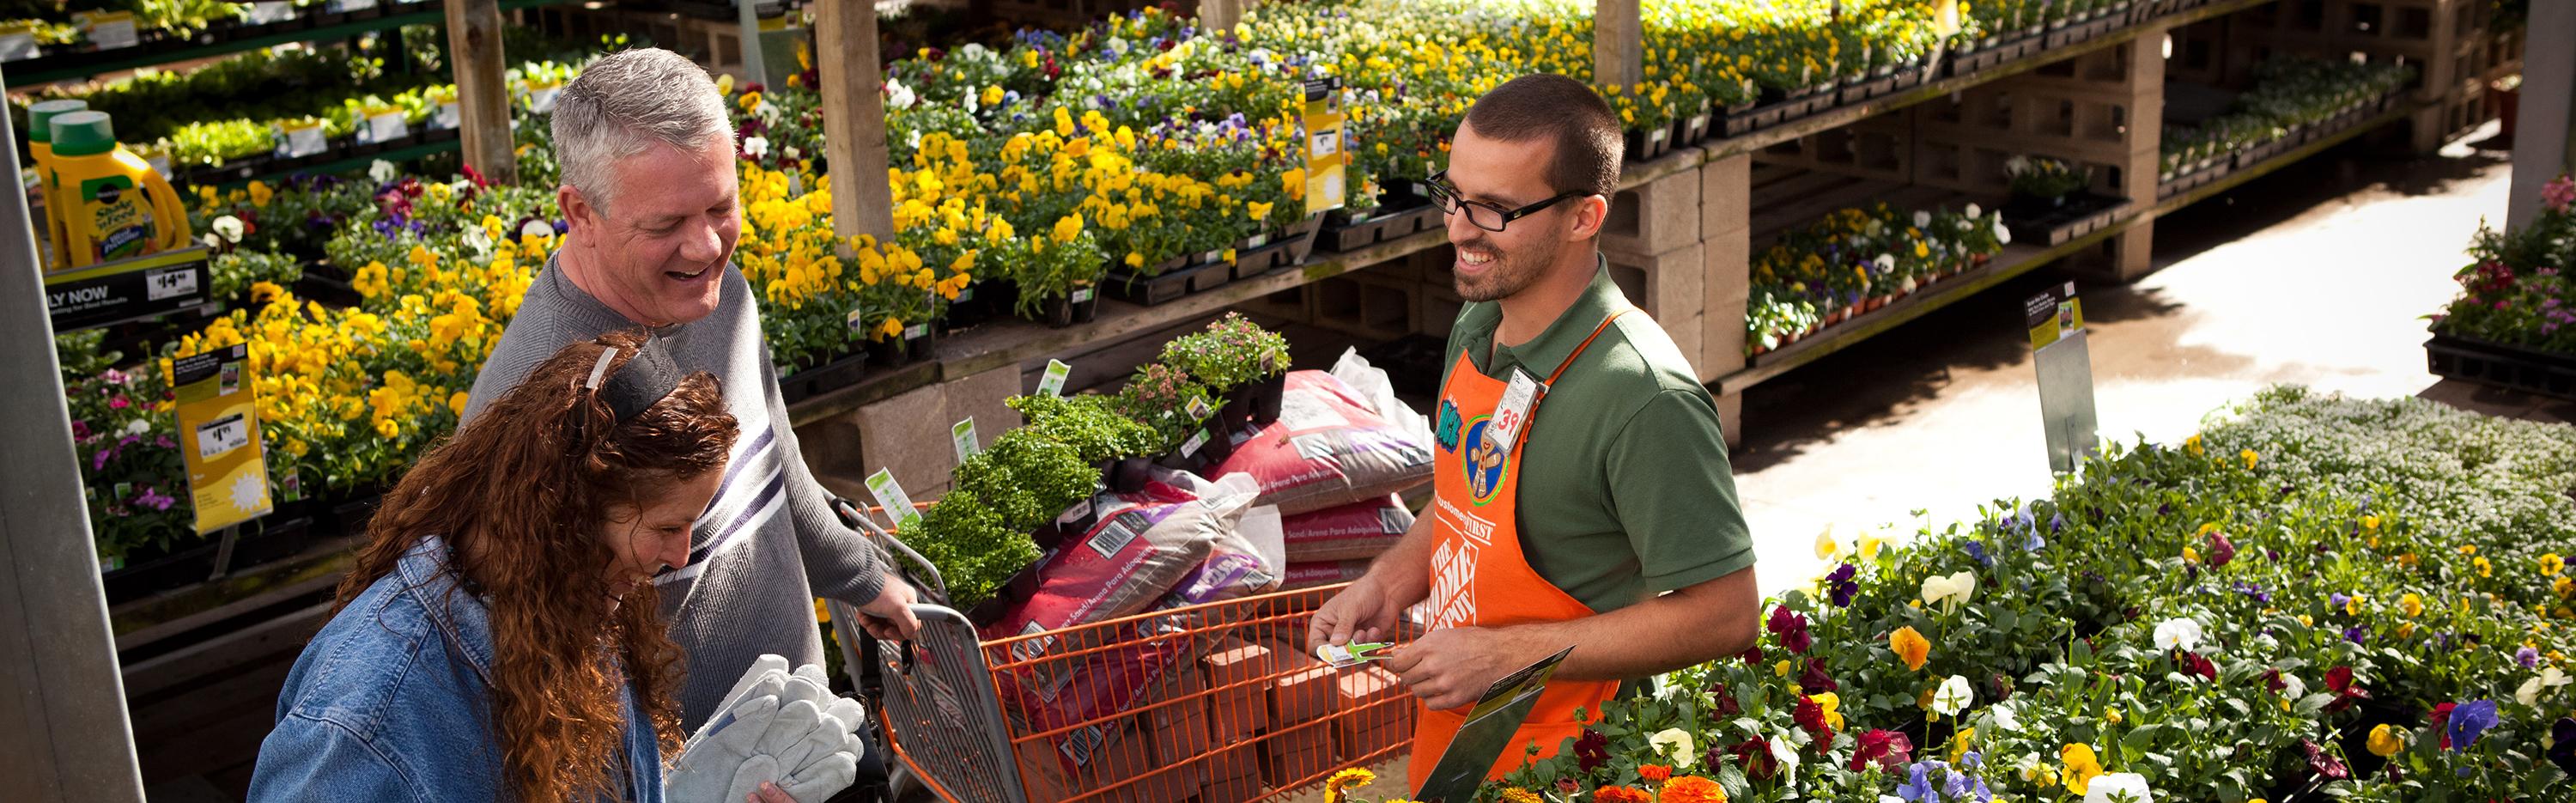 Home Depot associate helps customers in garden department